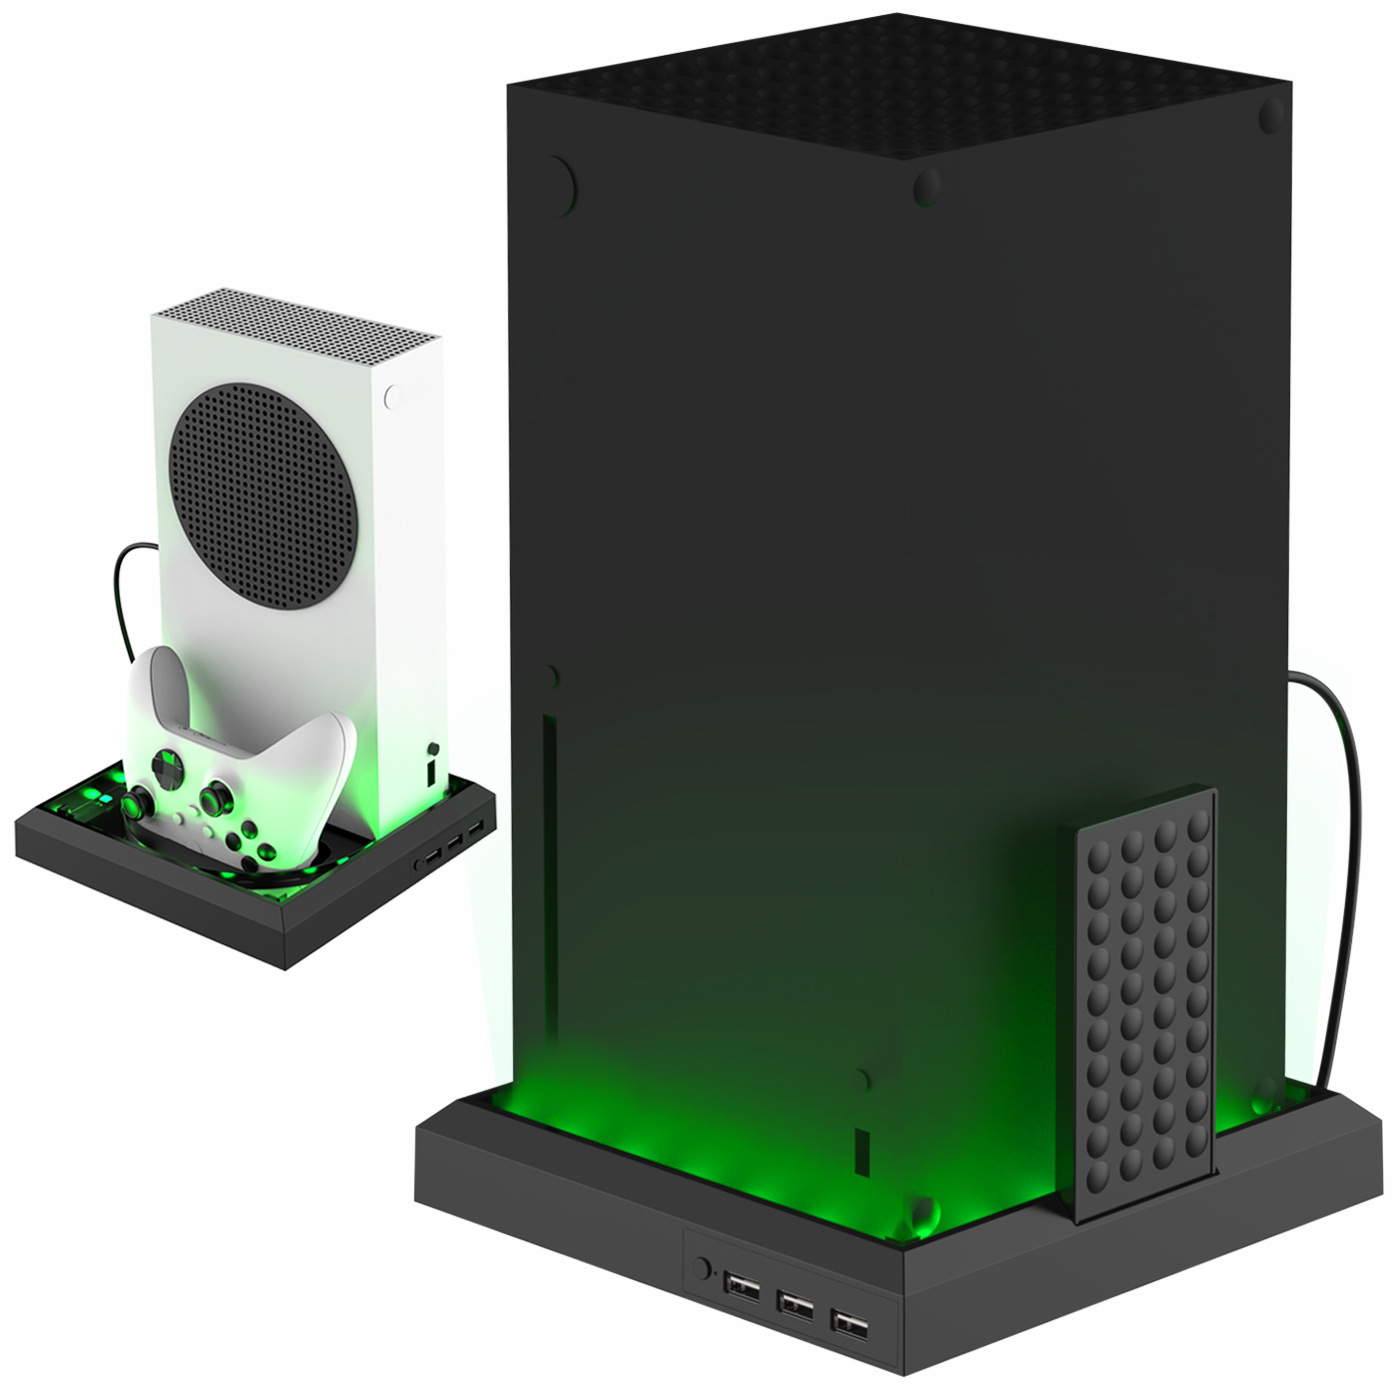 Support de lumière LED RVB pour console Xbox Series X S lumières changeantes décoration bricolage